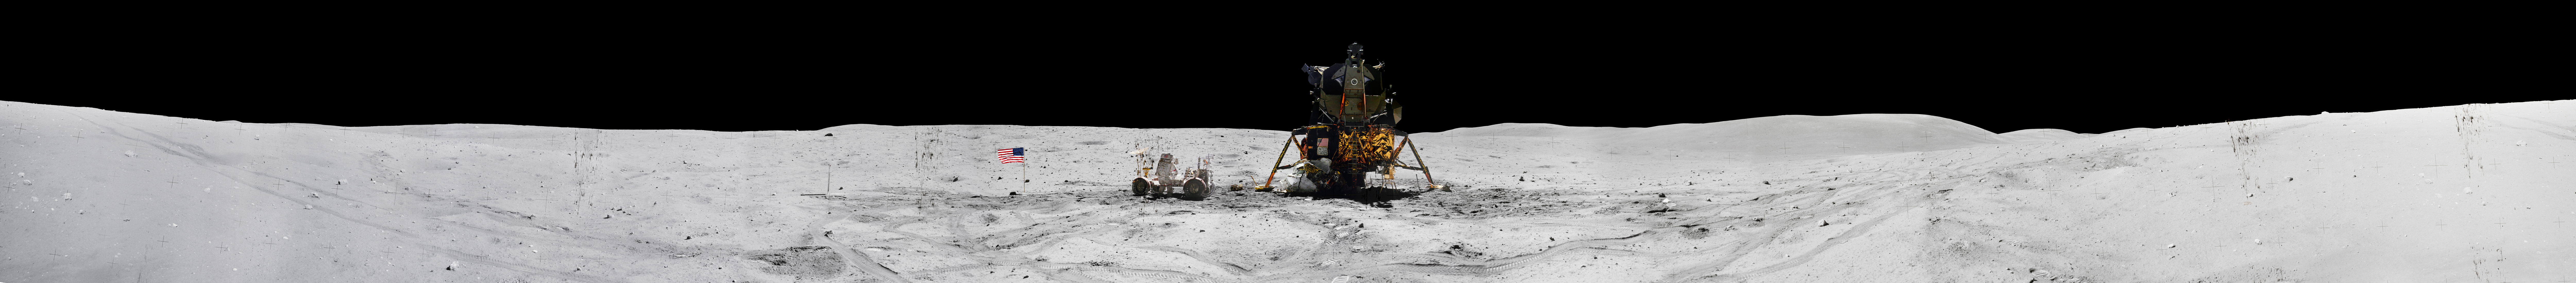 Les panoramiques sur la Lune des missions Apollo